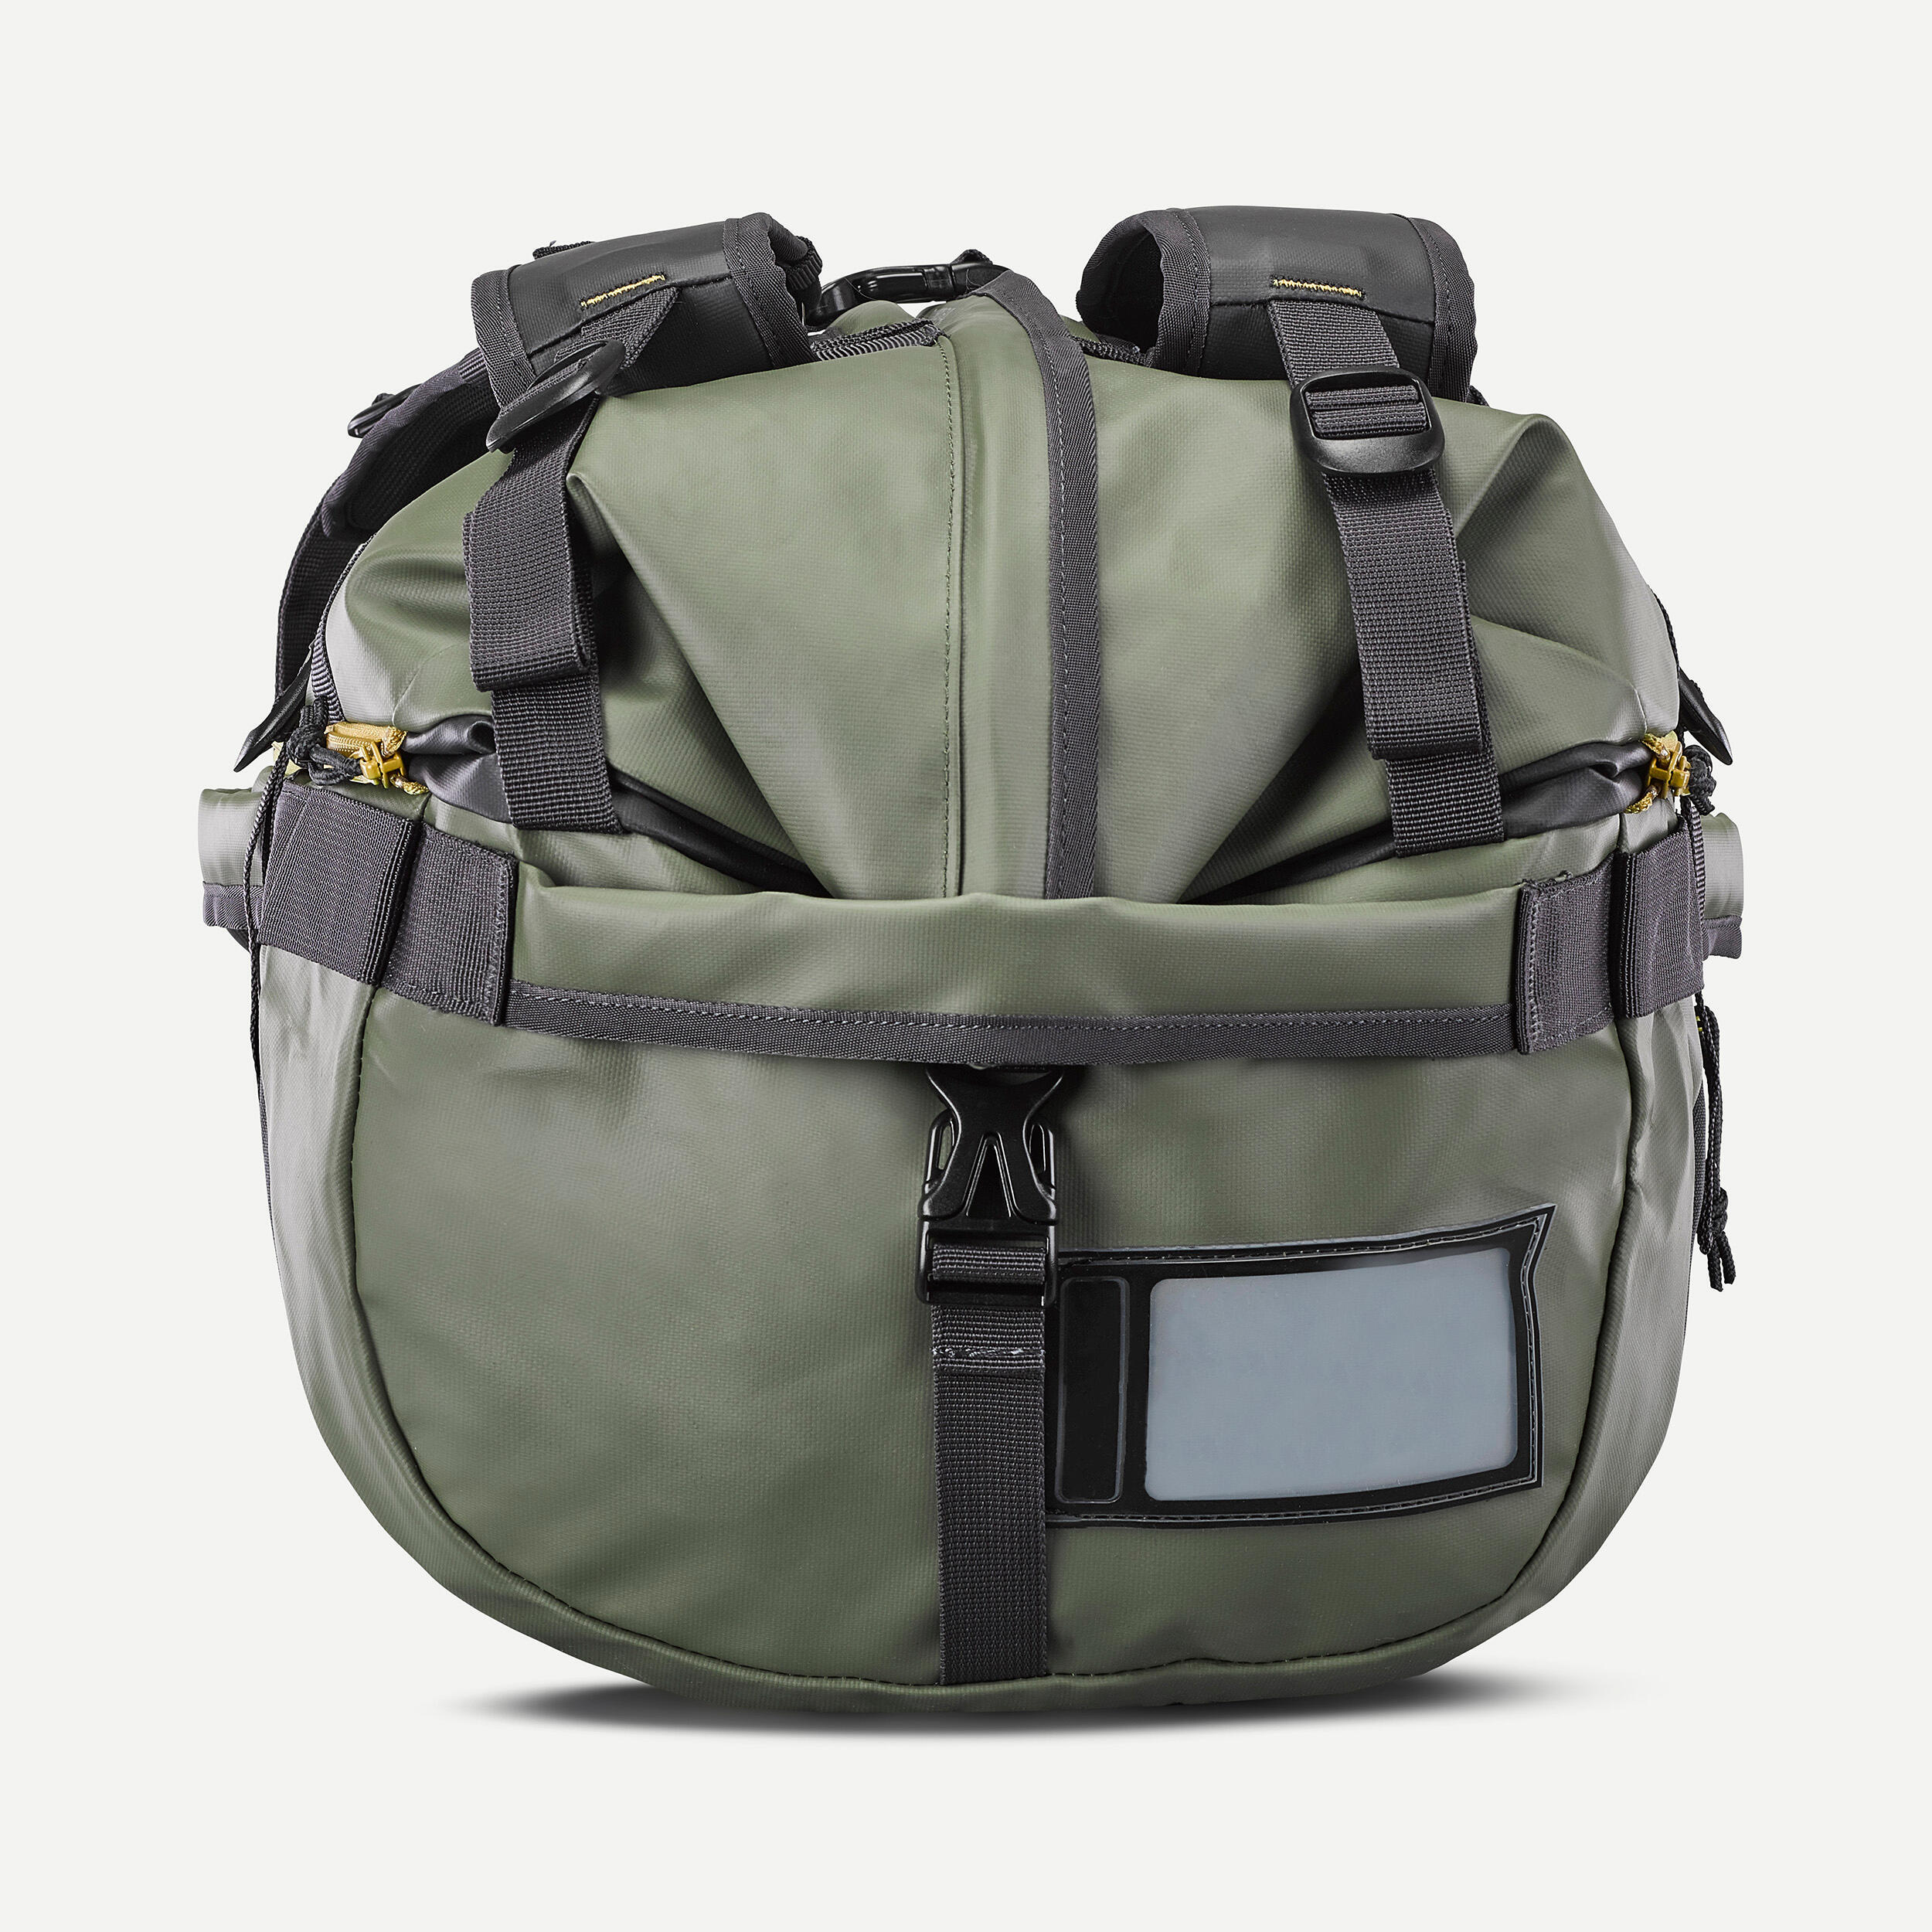 Trekking Carry Bag - 40 L to 60 L - DUFFEL 500 EXTEND 6/9